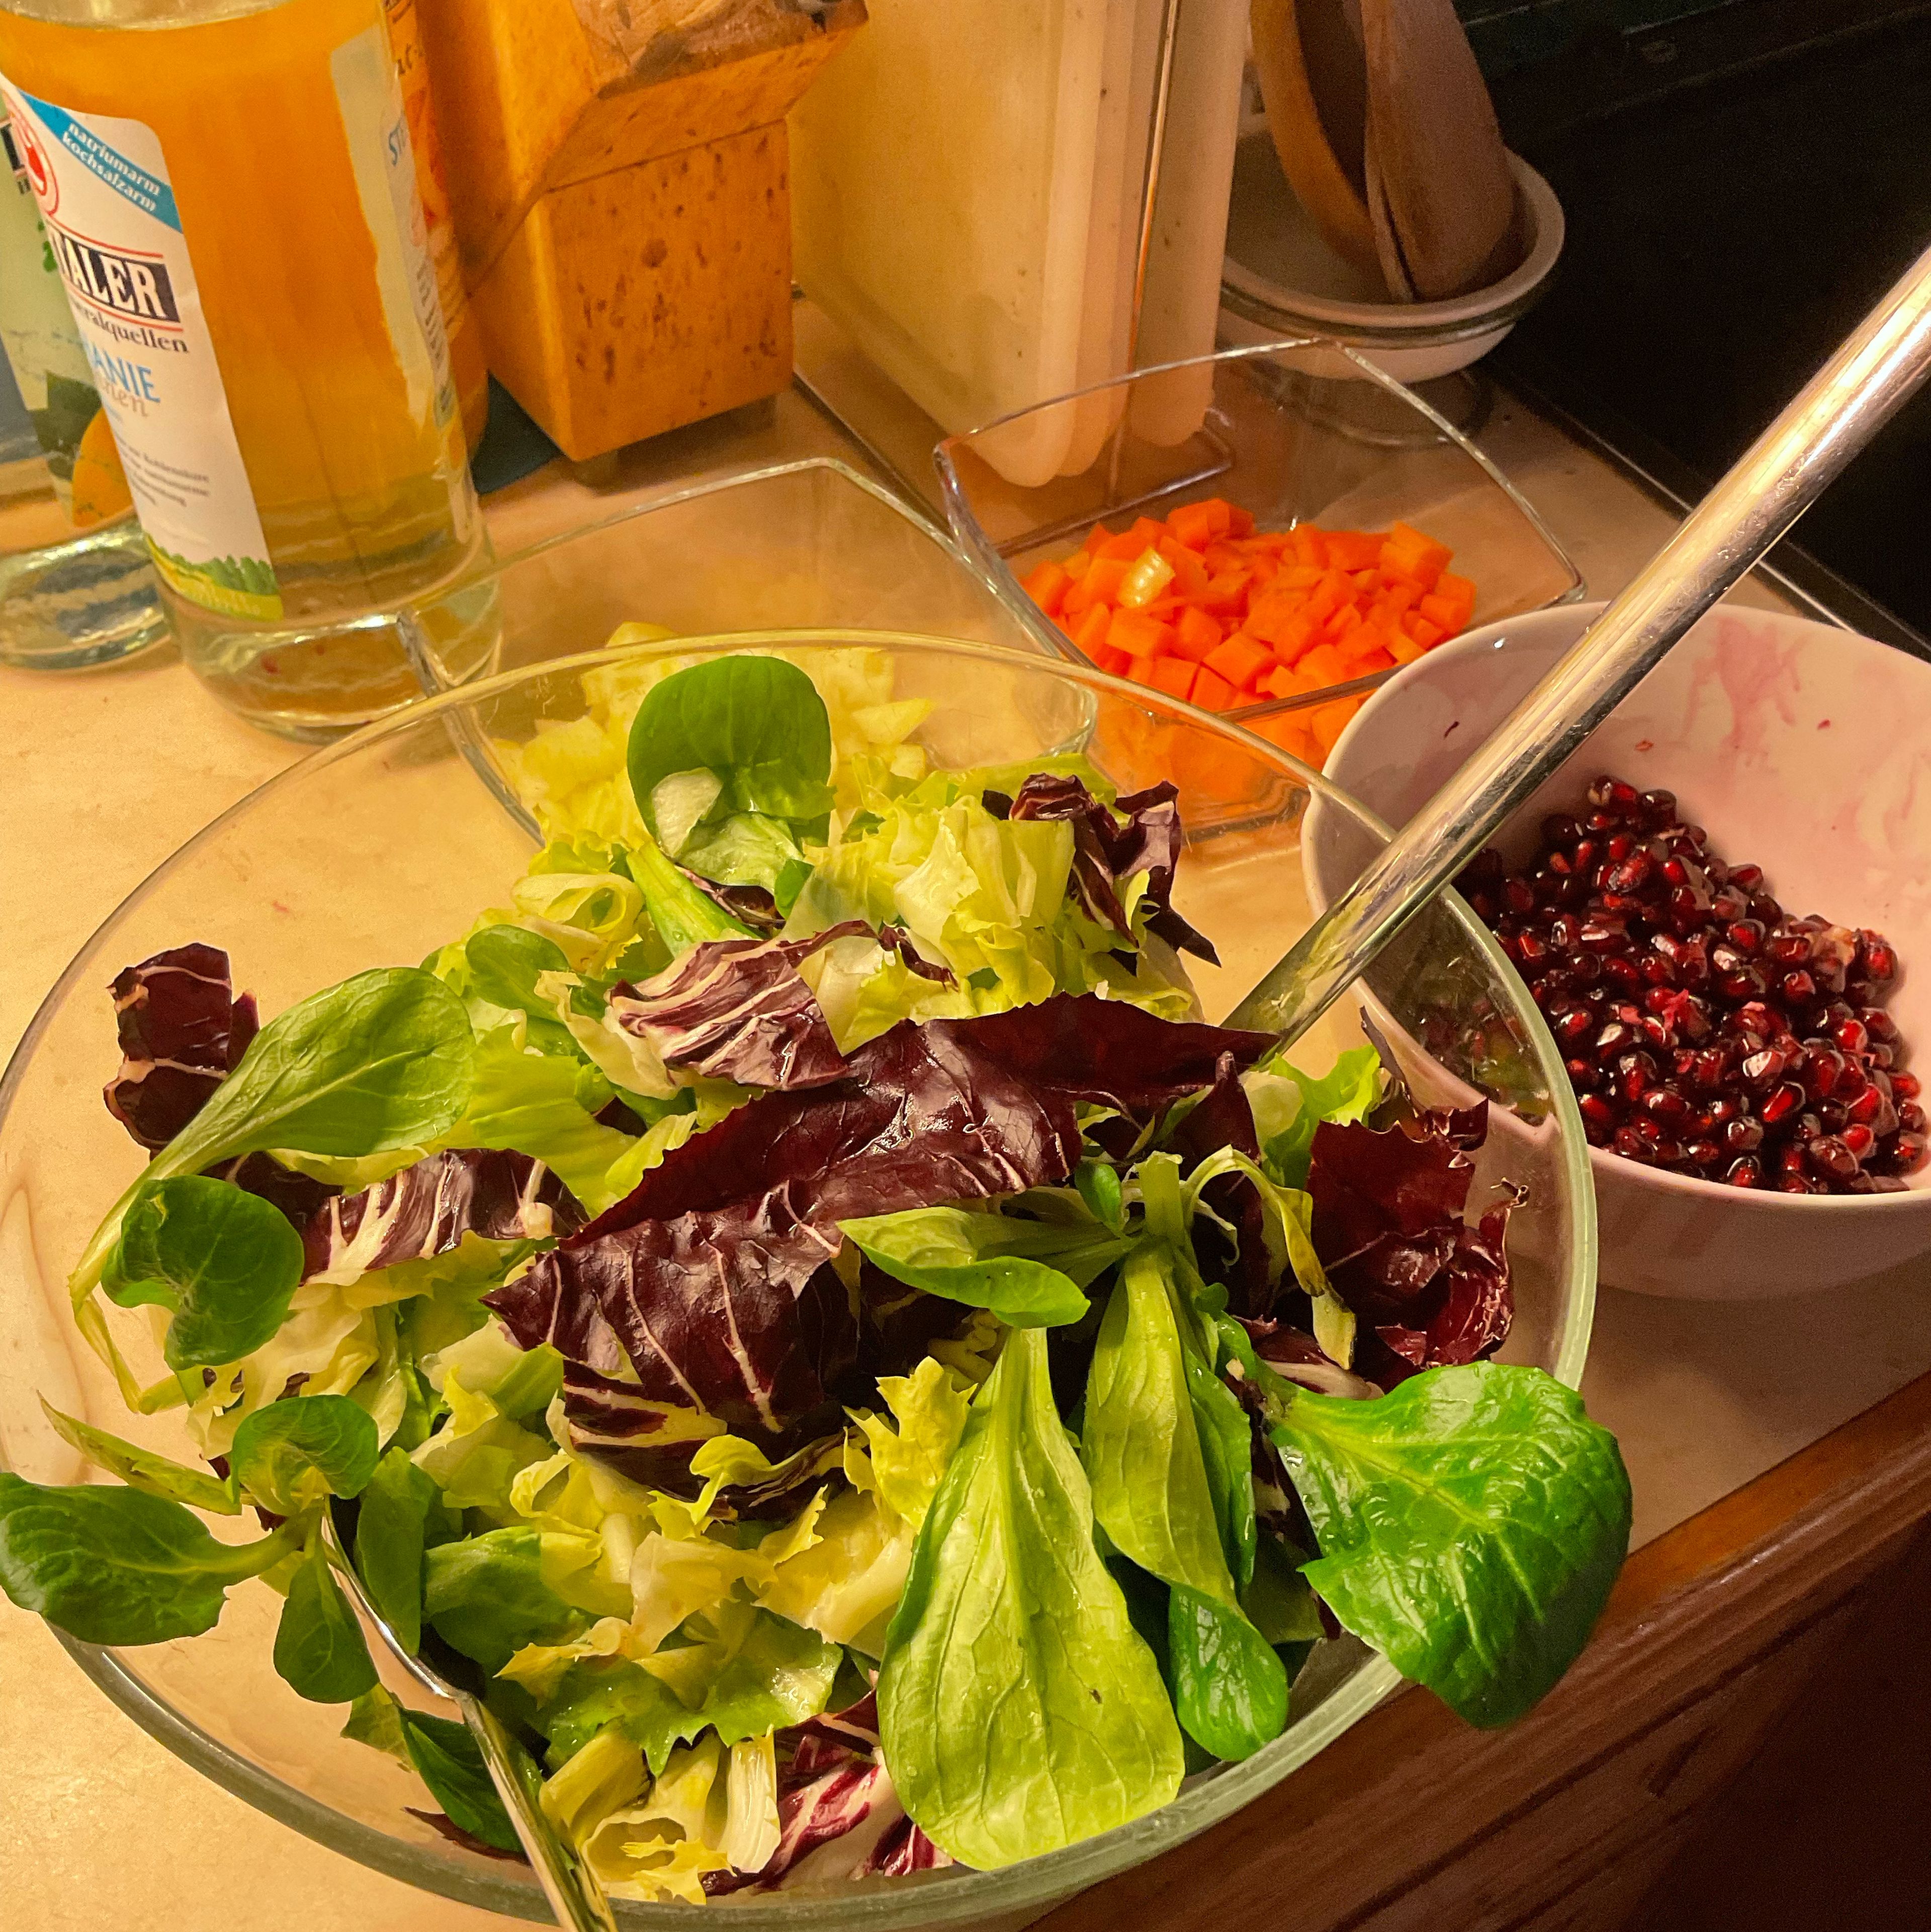 Ein kleiner „Wintersalat“ mit fein geschnittenem Raddicio, Endivien und wenig Feldsalat, sowie einer Essig-Öl-Vinaigrette passt hervorragend dazu.